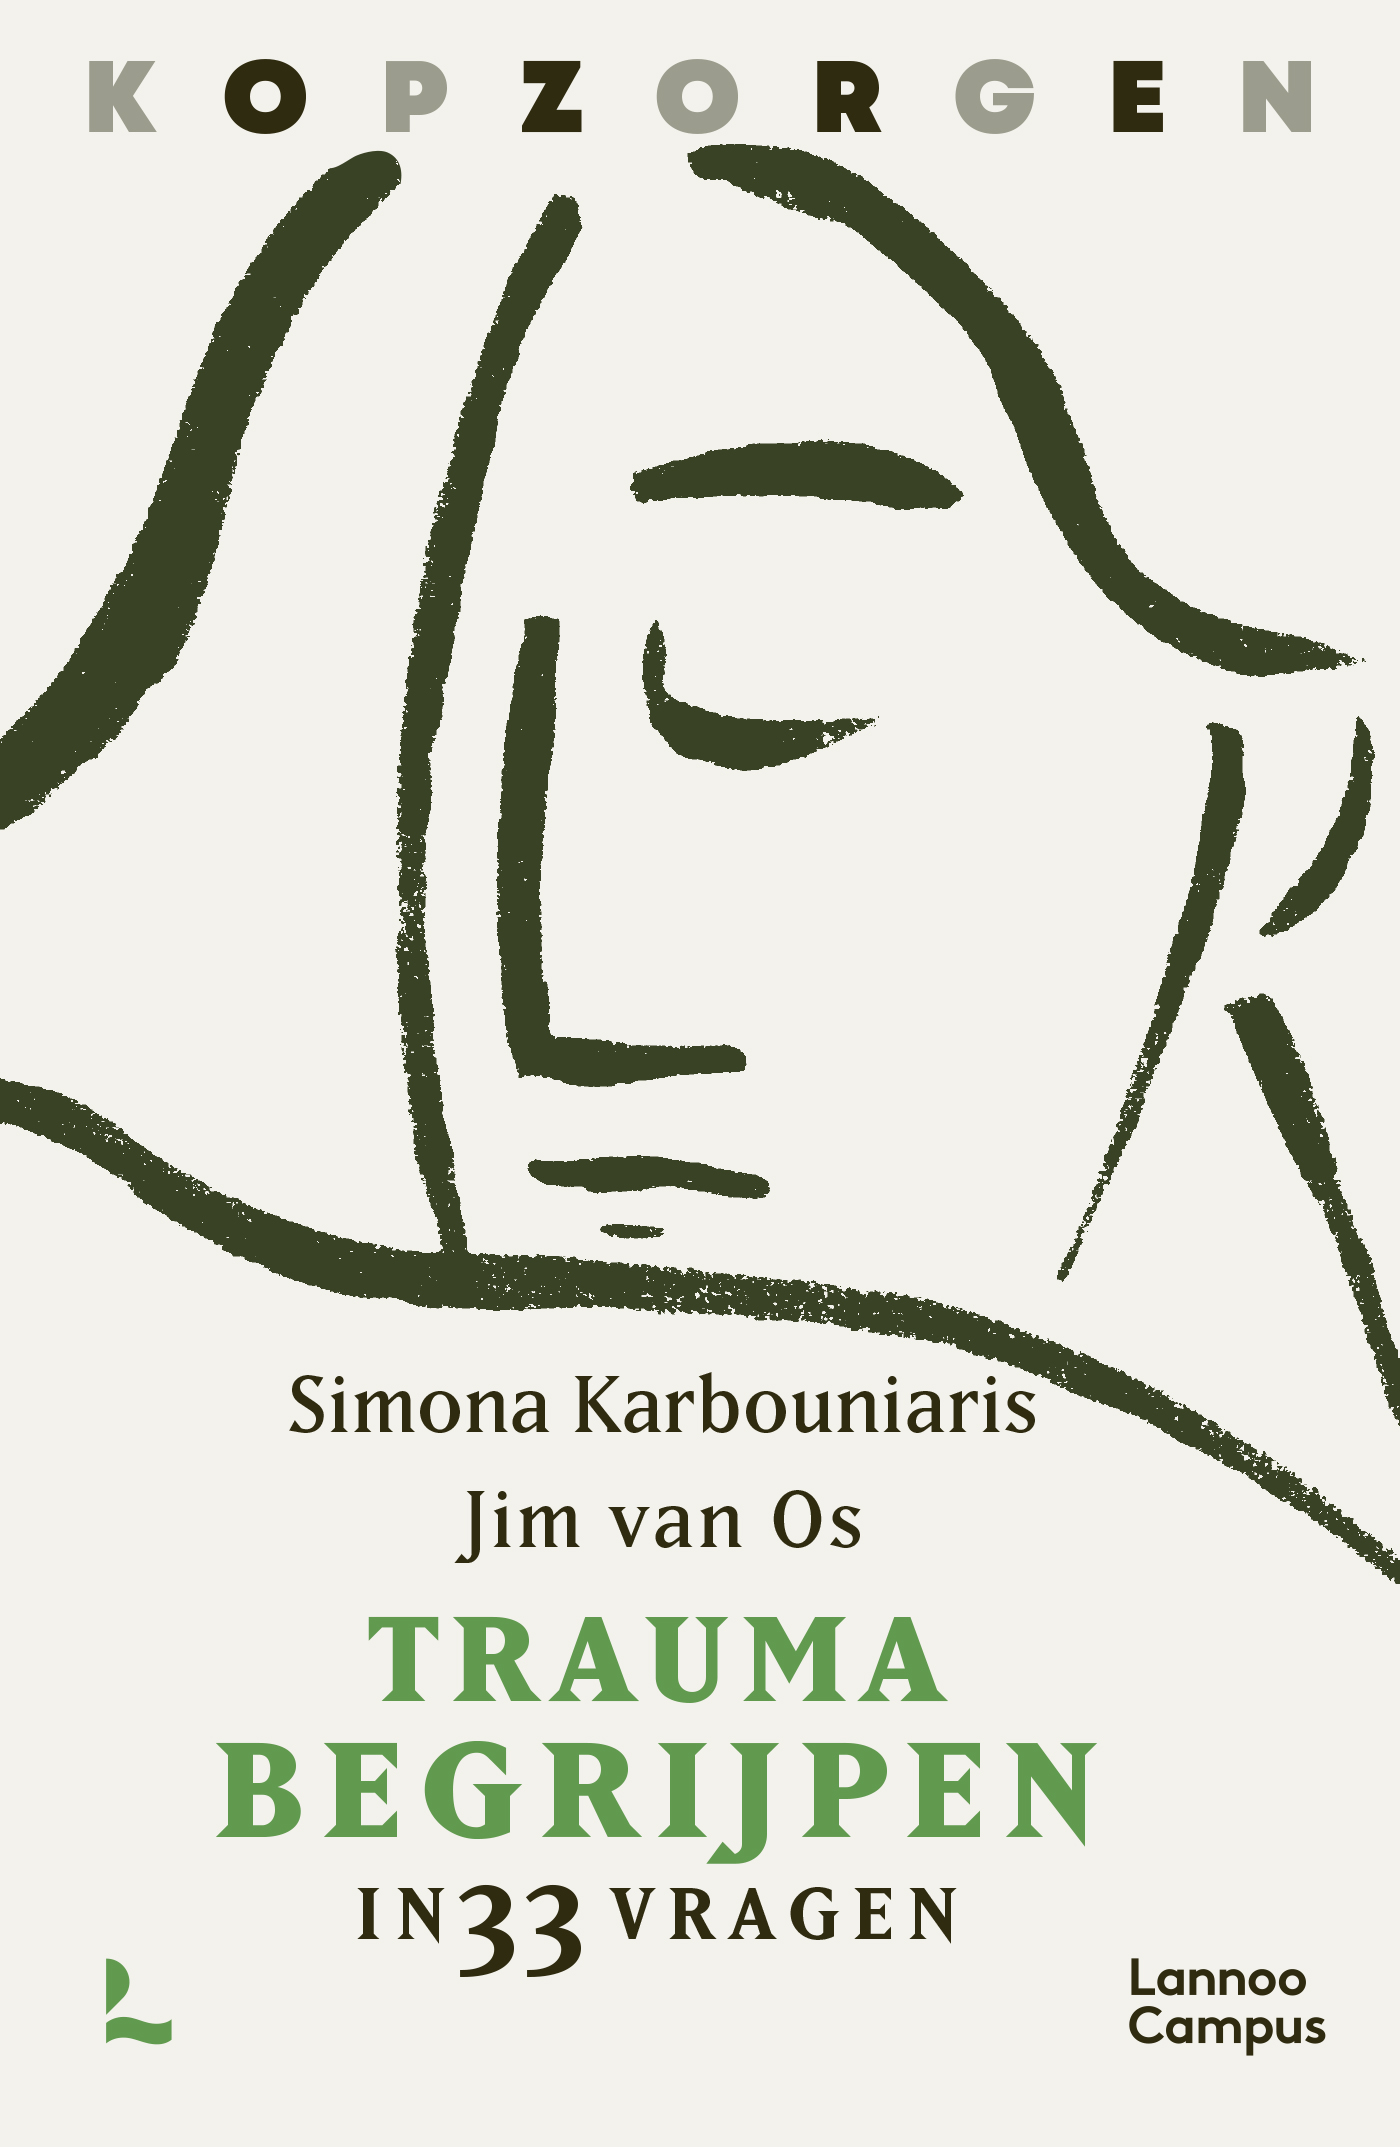 Het boek Trauma begrijpen in 33 vragen geeft duidelijkheid over trauma. Dit fijne boek brengt oorzaken, behandelingen en bejegening samen.